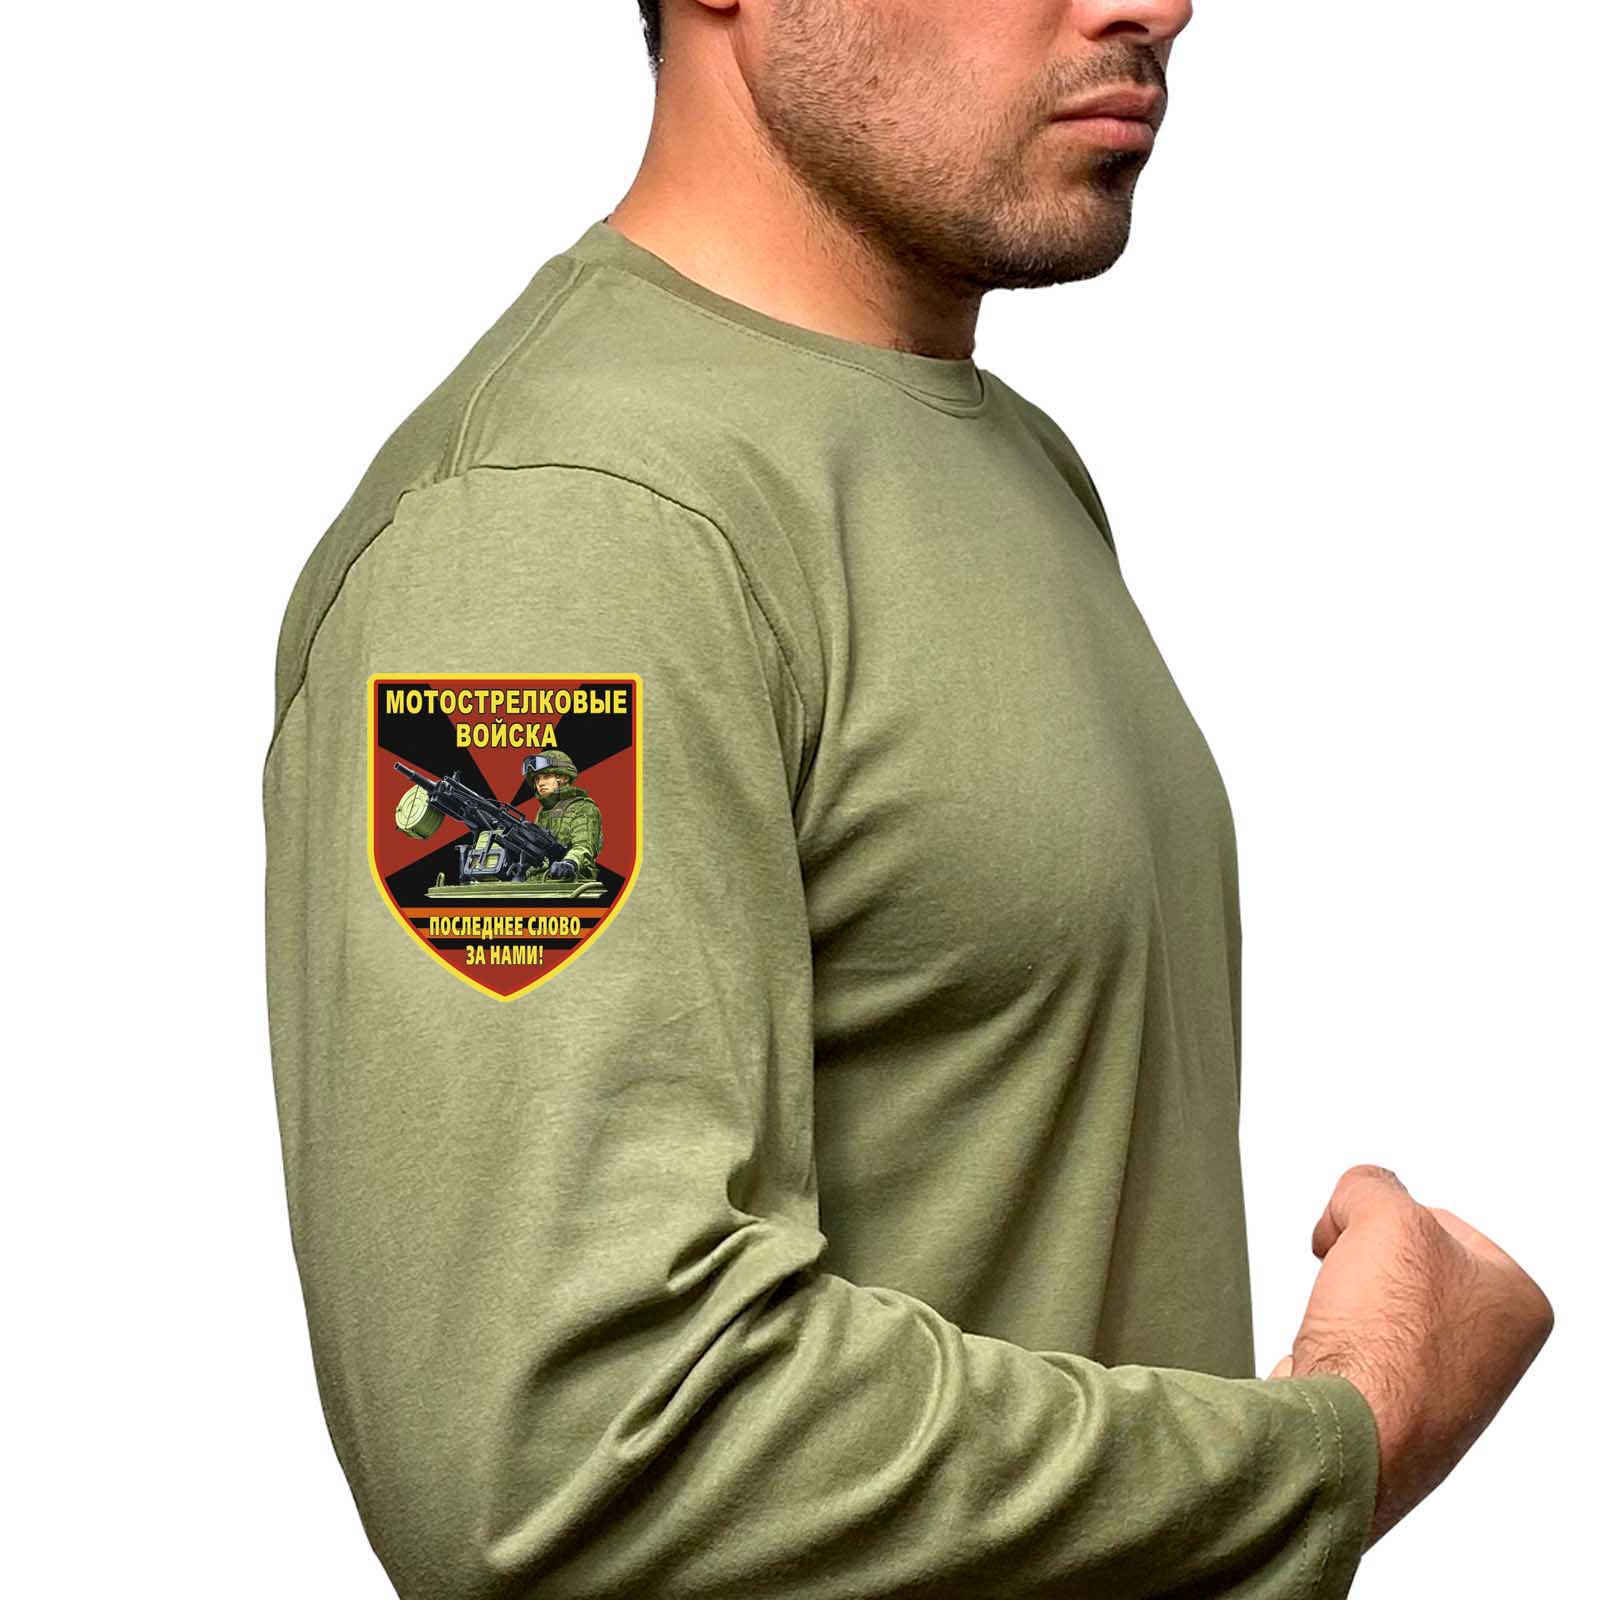 Купить трикотажную футболку с длинным рукавом с термоаппликацией Мотострелковые войска с доставкой